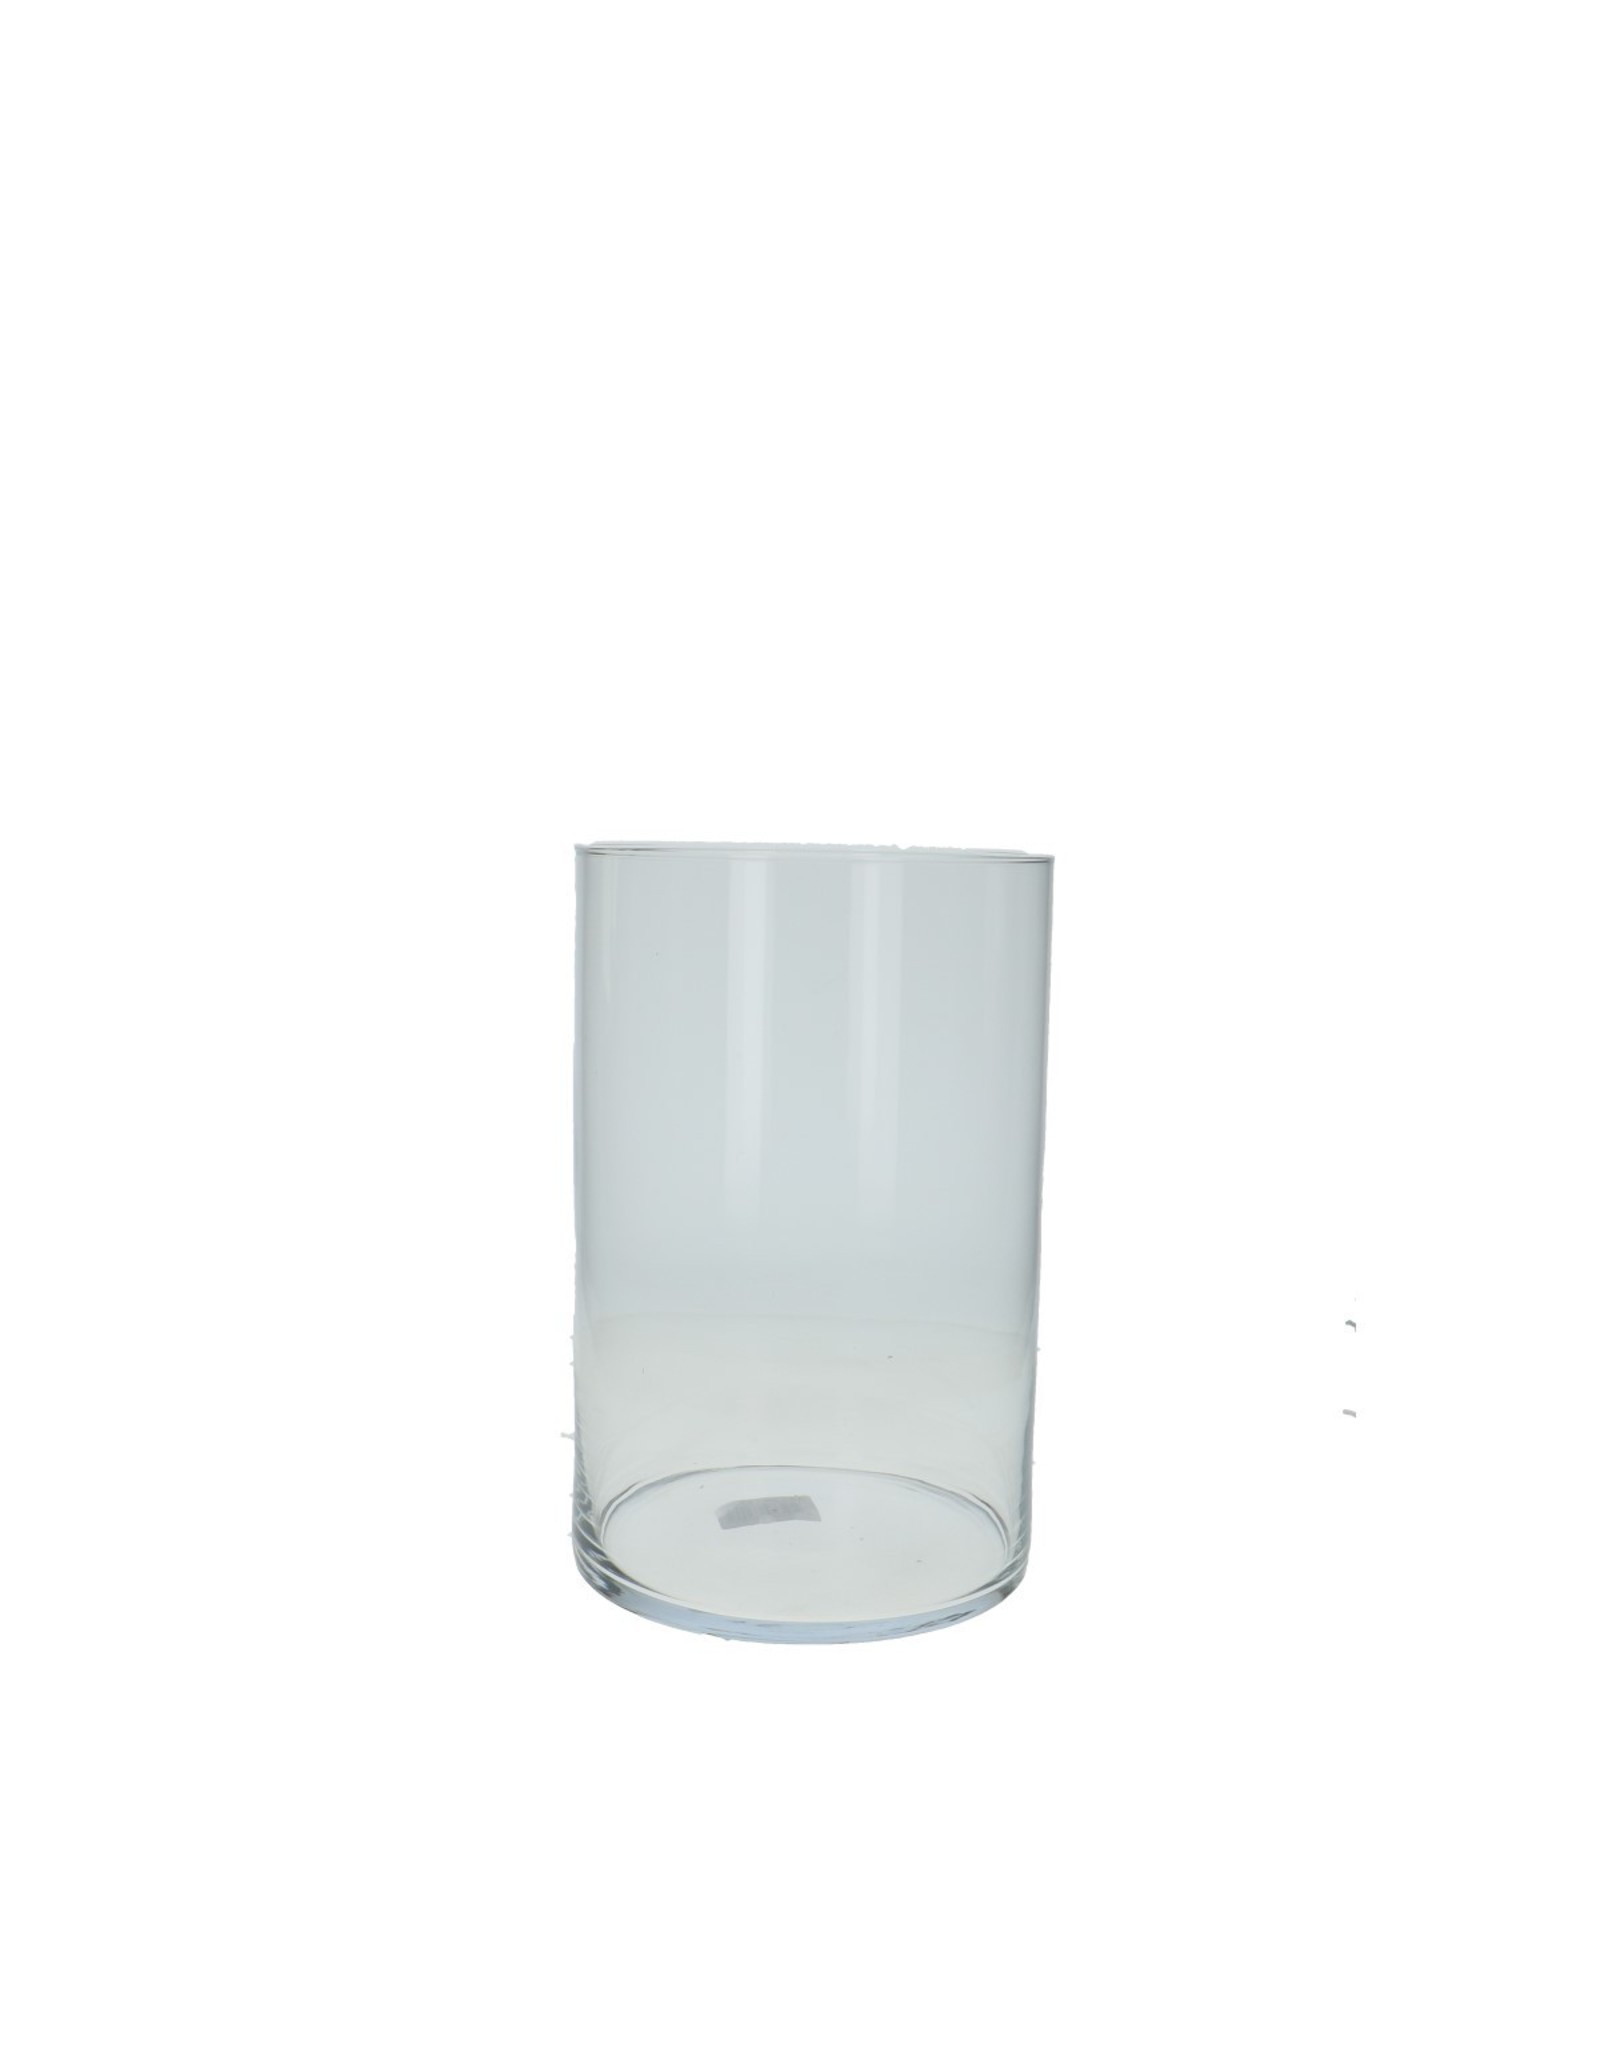 4AT Glas Cilinder d20*30cm | Kleur: Transparant | Eenheid: doos | Aantal: 1 | Aantal per eenheid: x